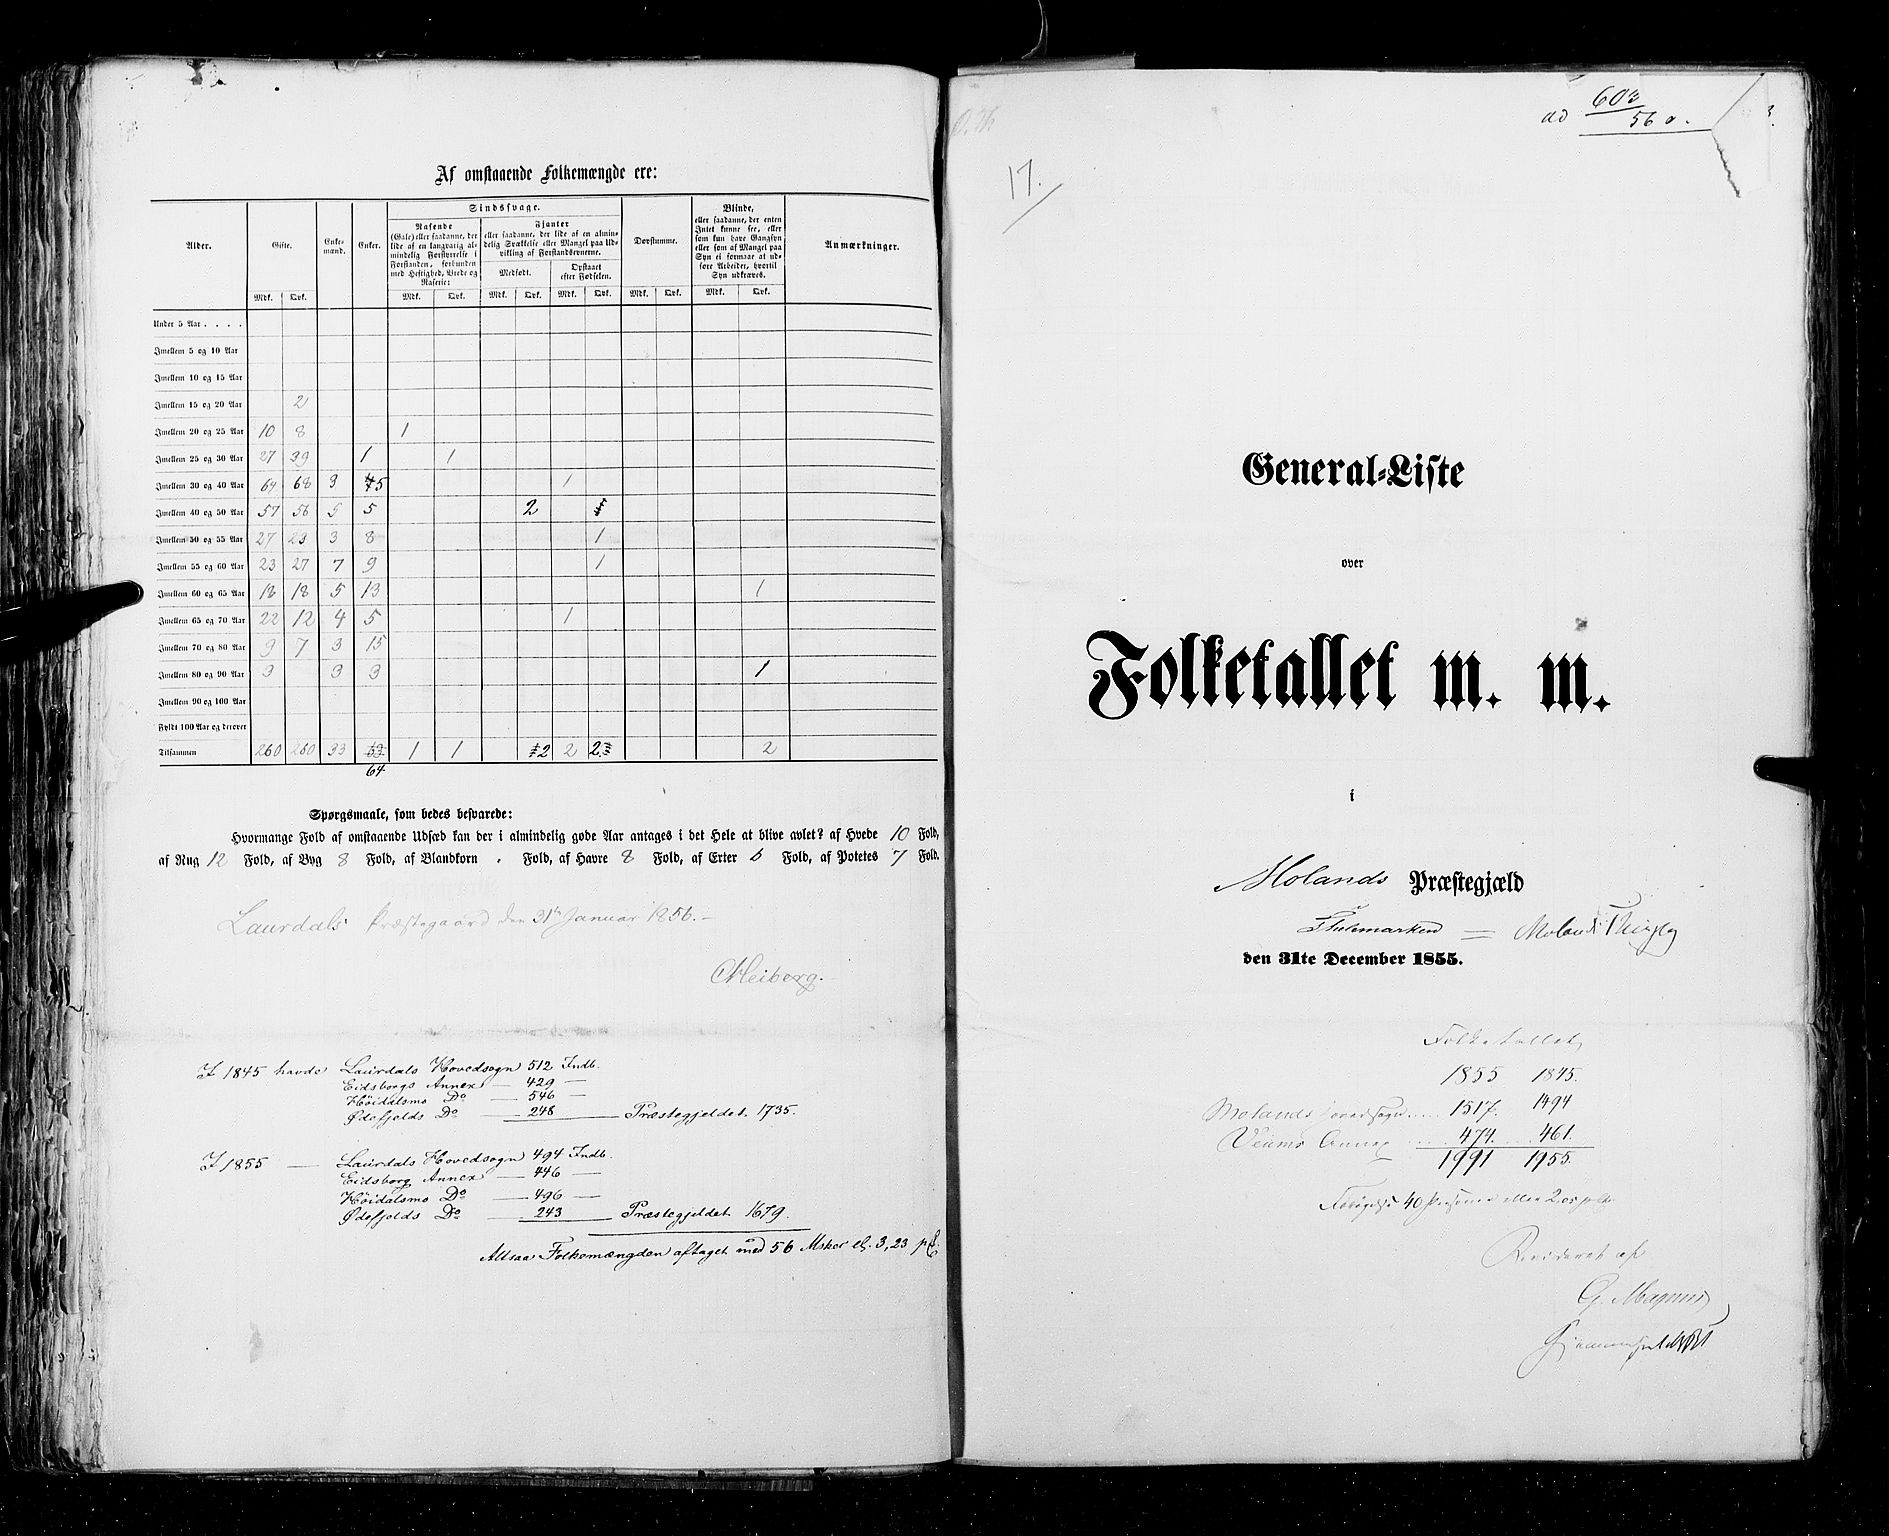 RA, Census 1855, vol. 3: Bratsberg amt, Nedenes amt og Lister og Mandal amt, 1855, p. 93